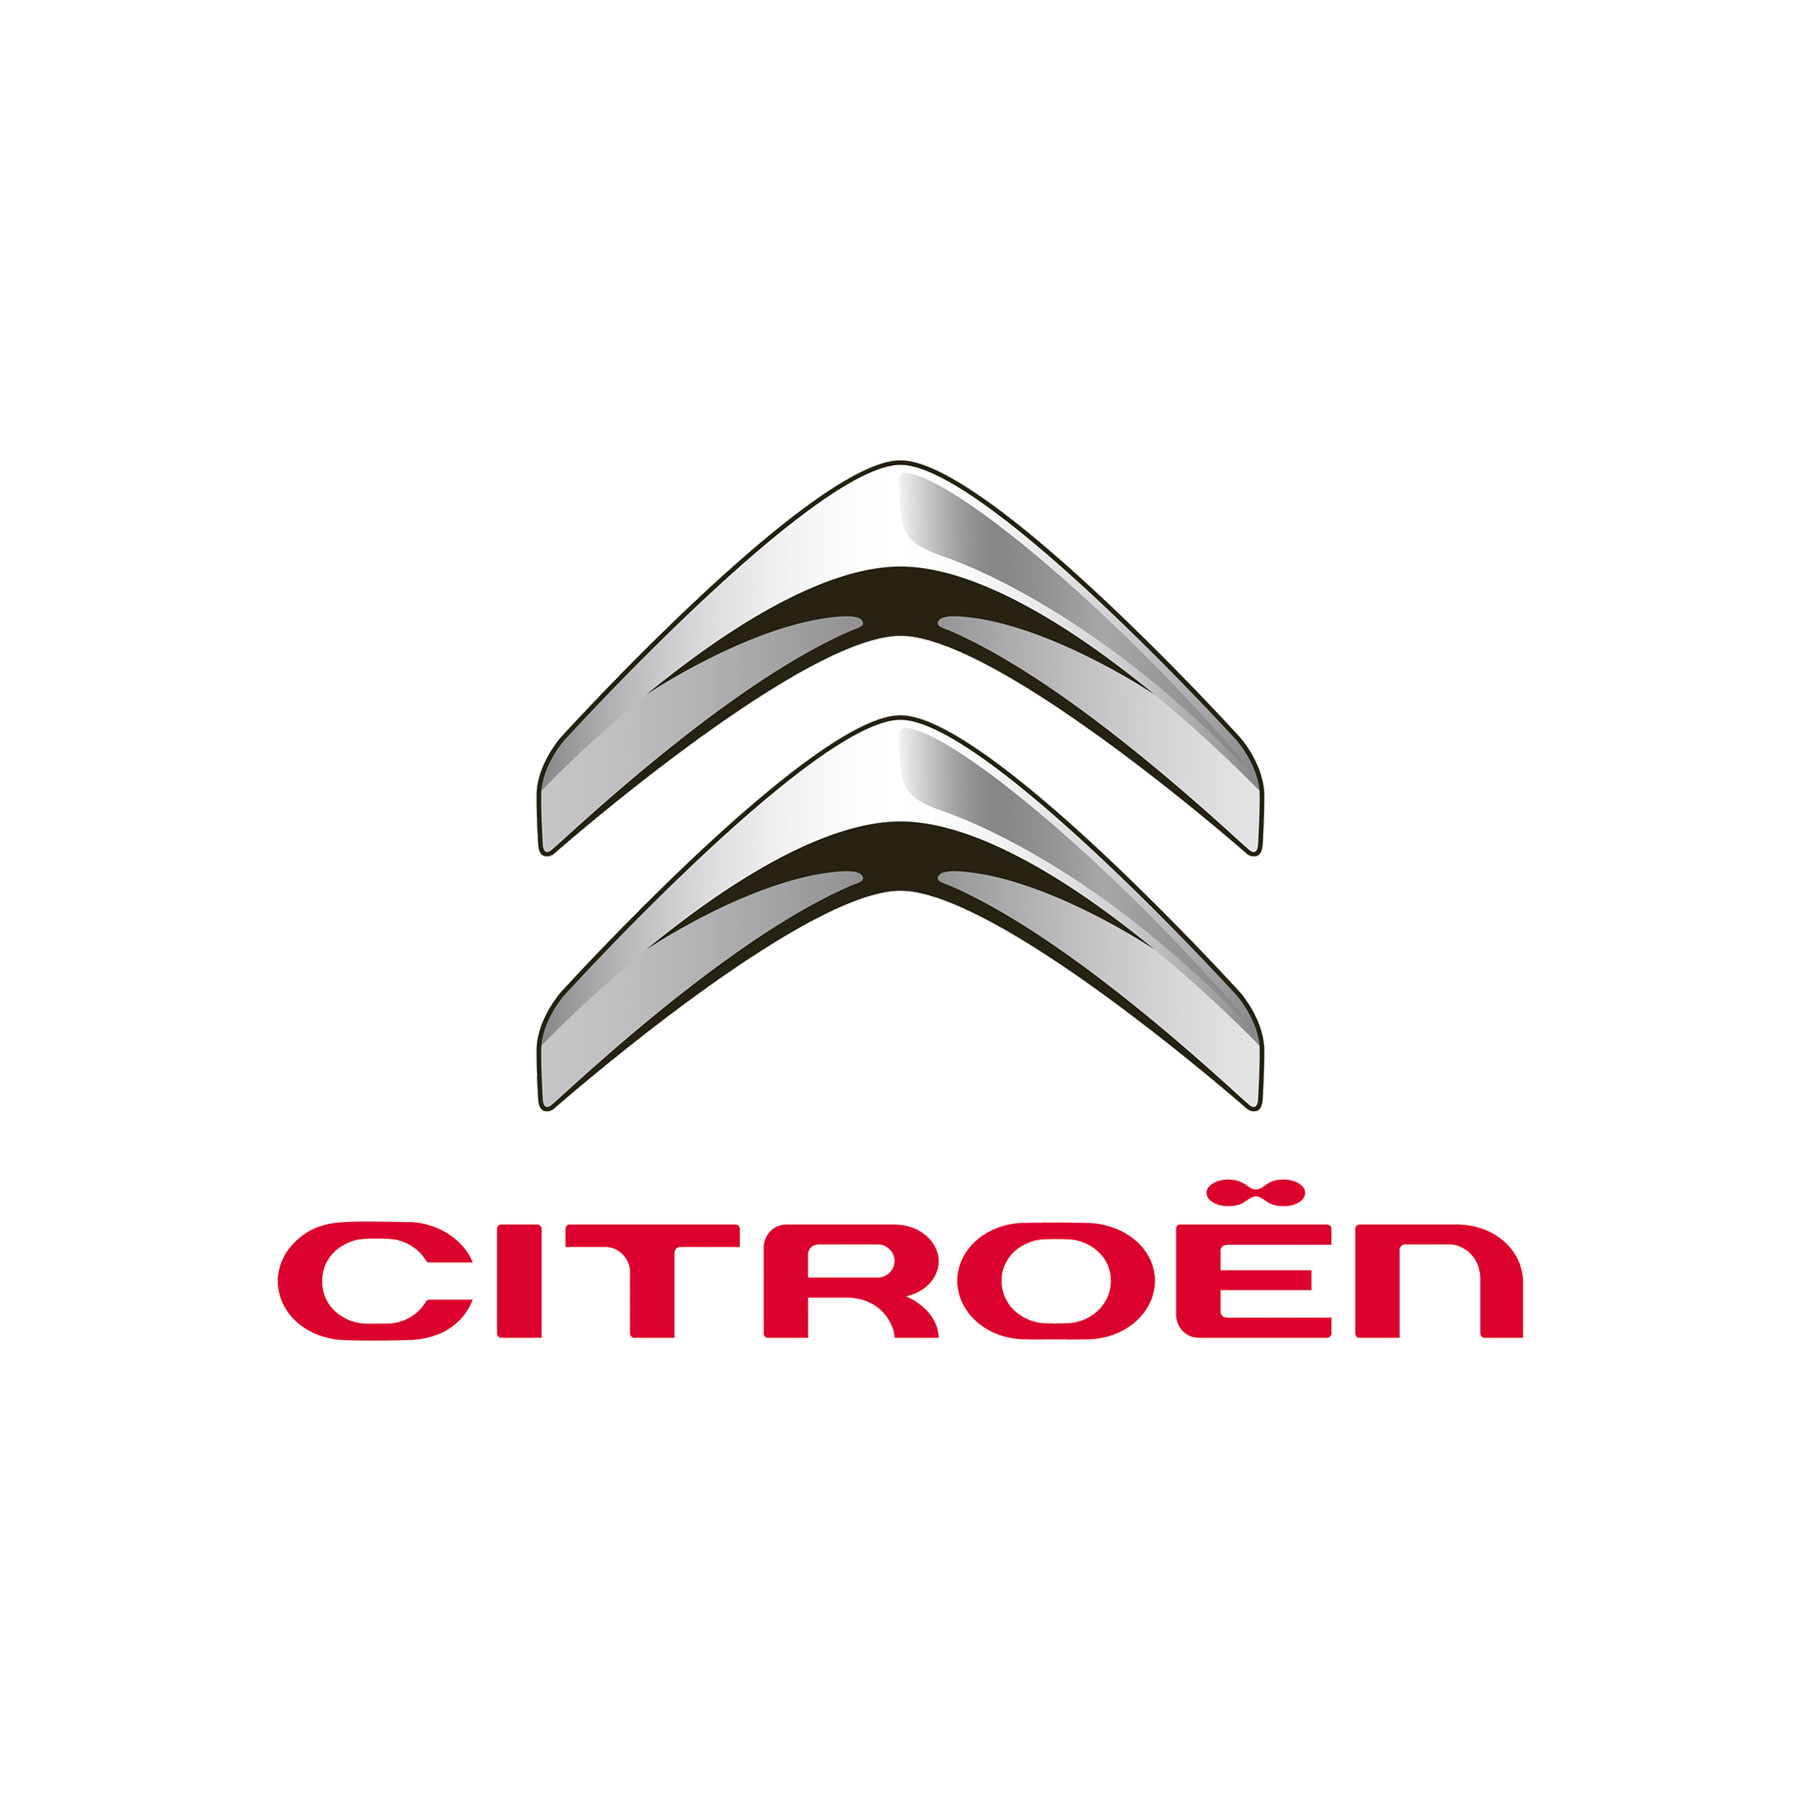 Citroën – History in Brief